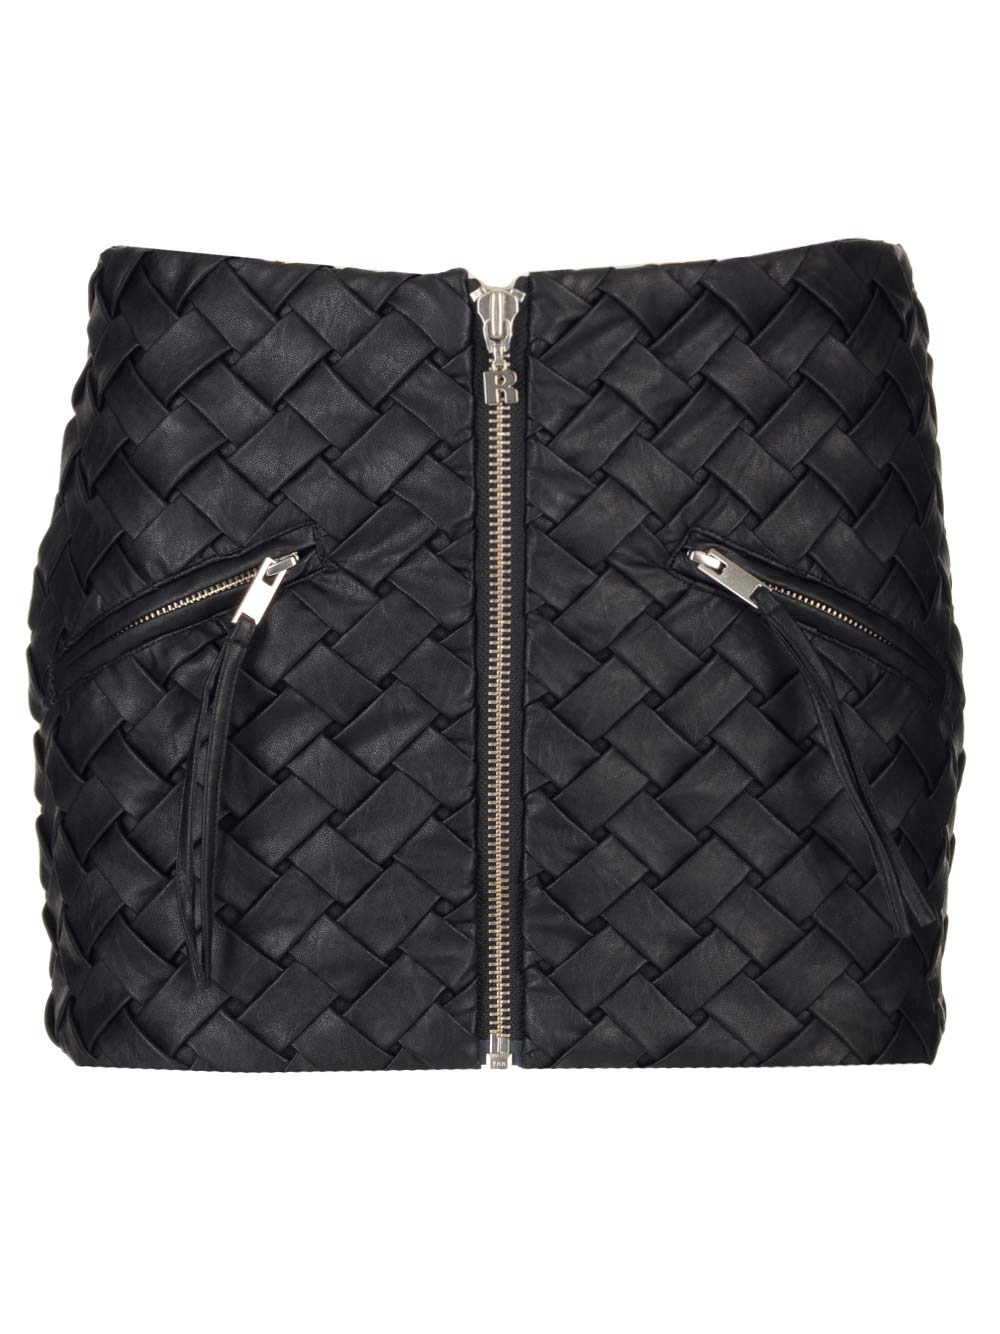 Shop Rotate Birger Christensen Black Woven Miniskirt